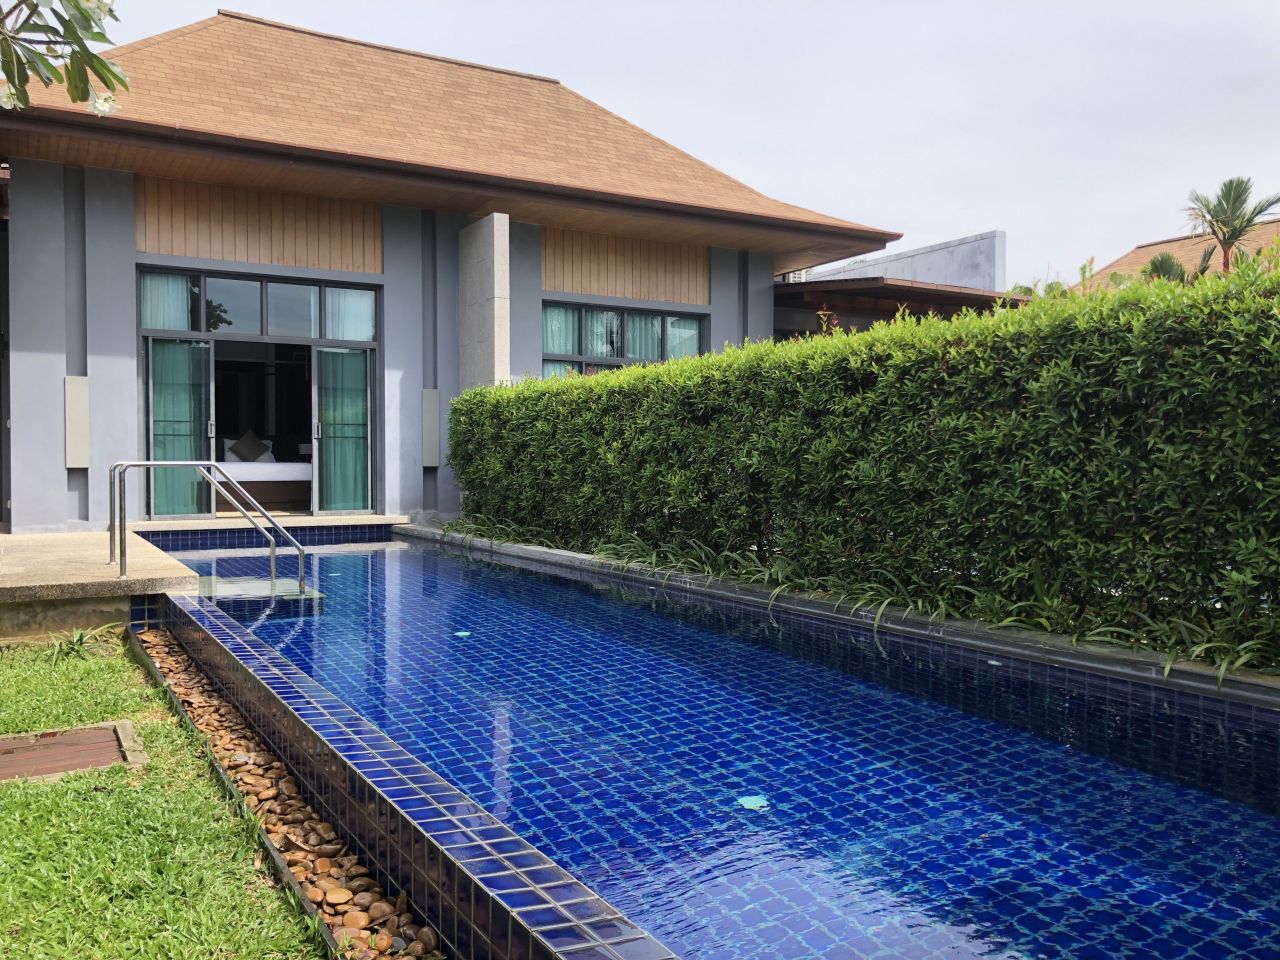 Villa in Insel Phuket, Thailand, 168 m2 - Foto 1